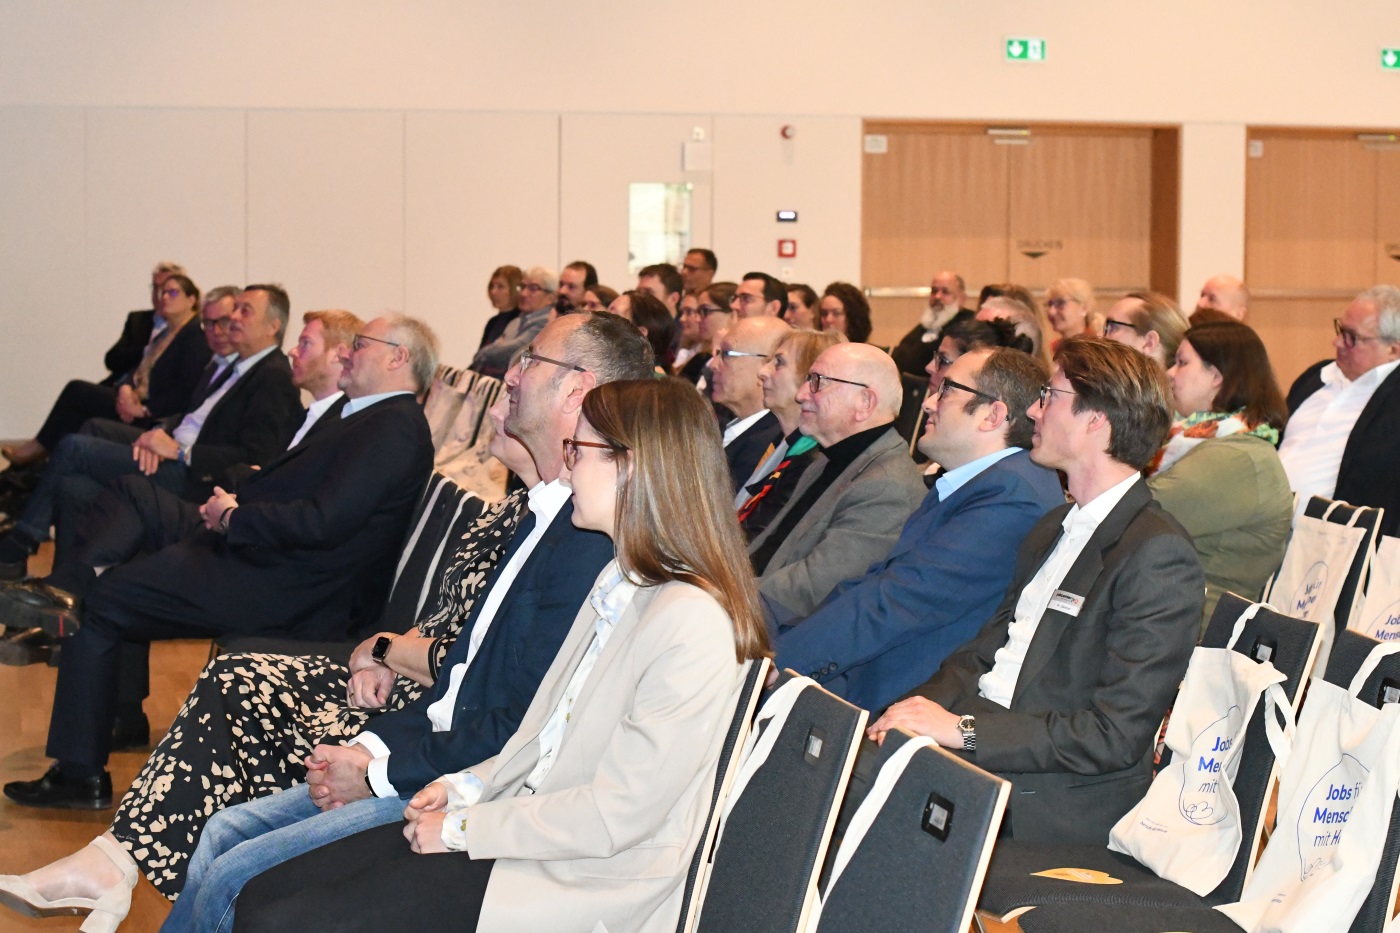 Interessiertes Publikum bei der Auftaktveranstaltung der Aktion des Rhein-Neckar-Kreis "Soziale Berufe" in der Dr.-Sieber-Halle Sinsheim. Quelle: GRN